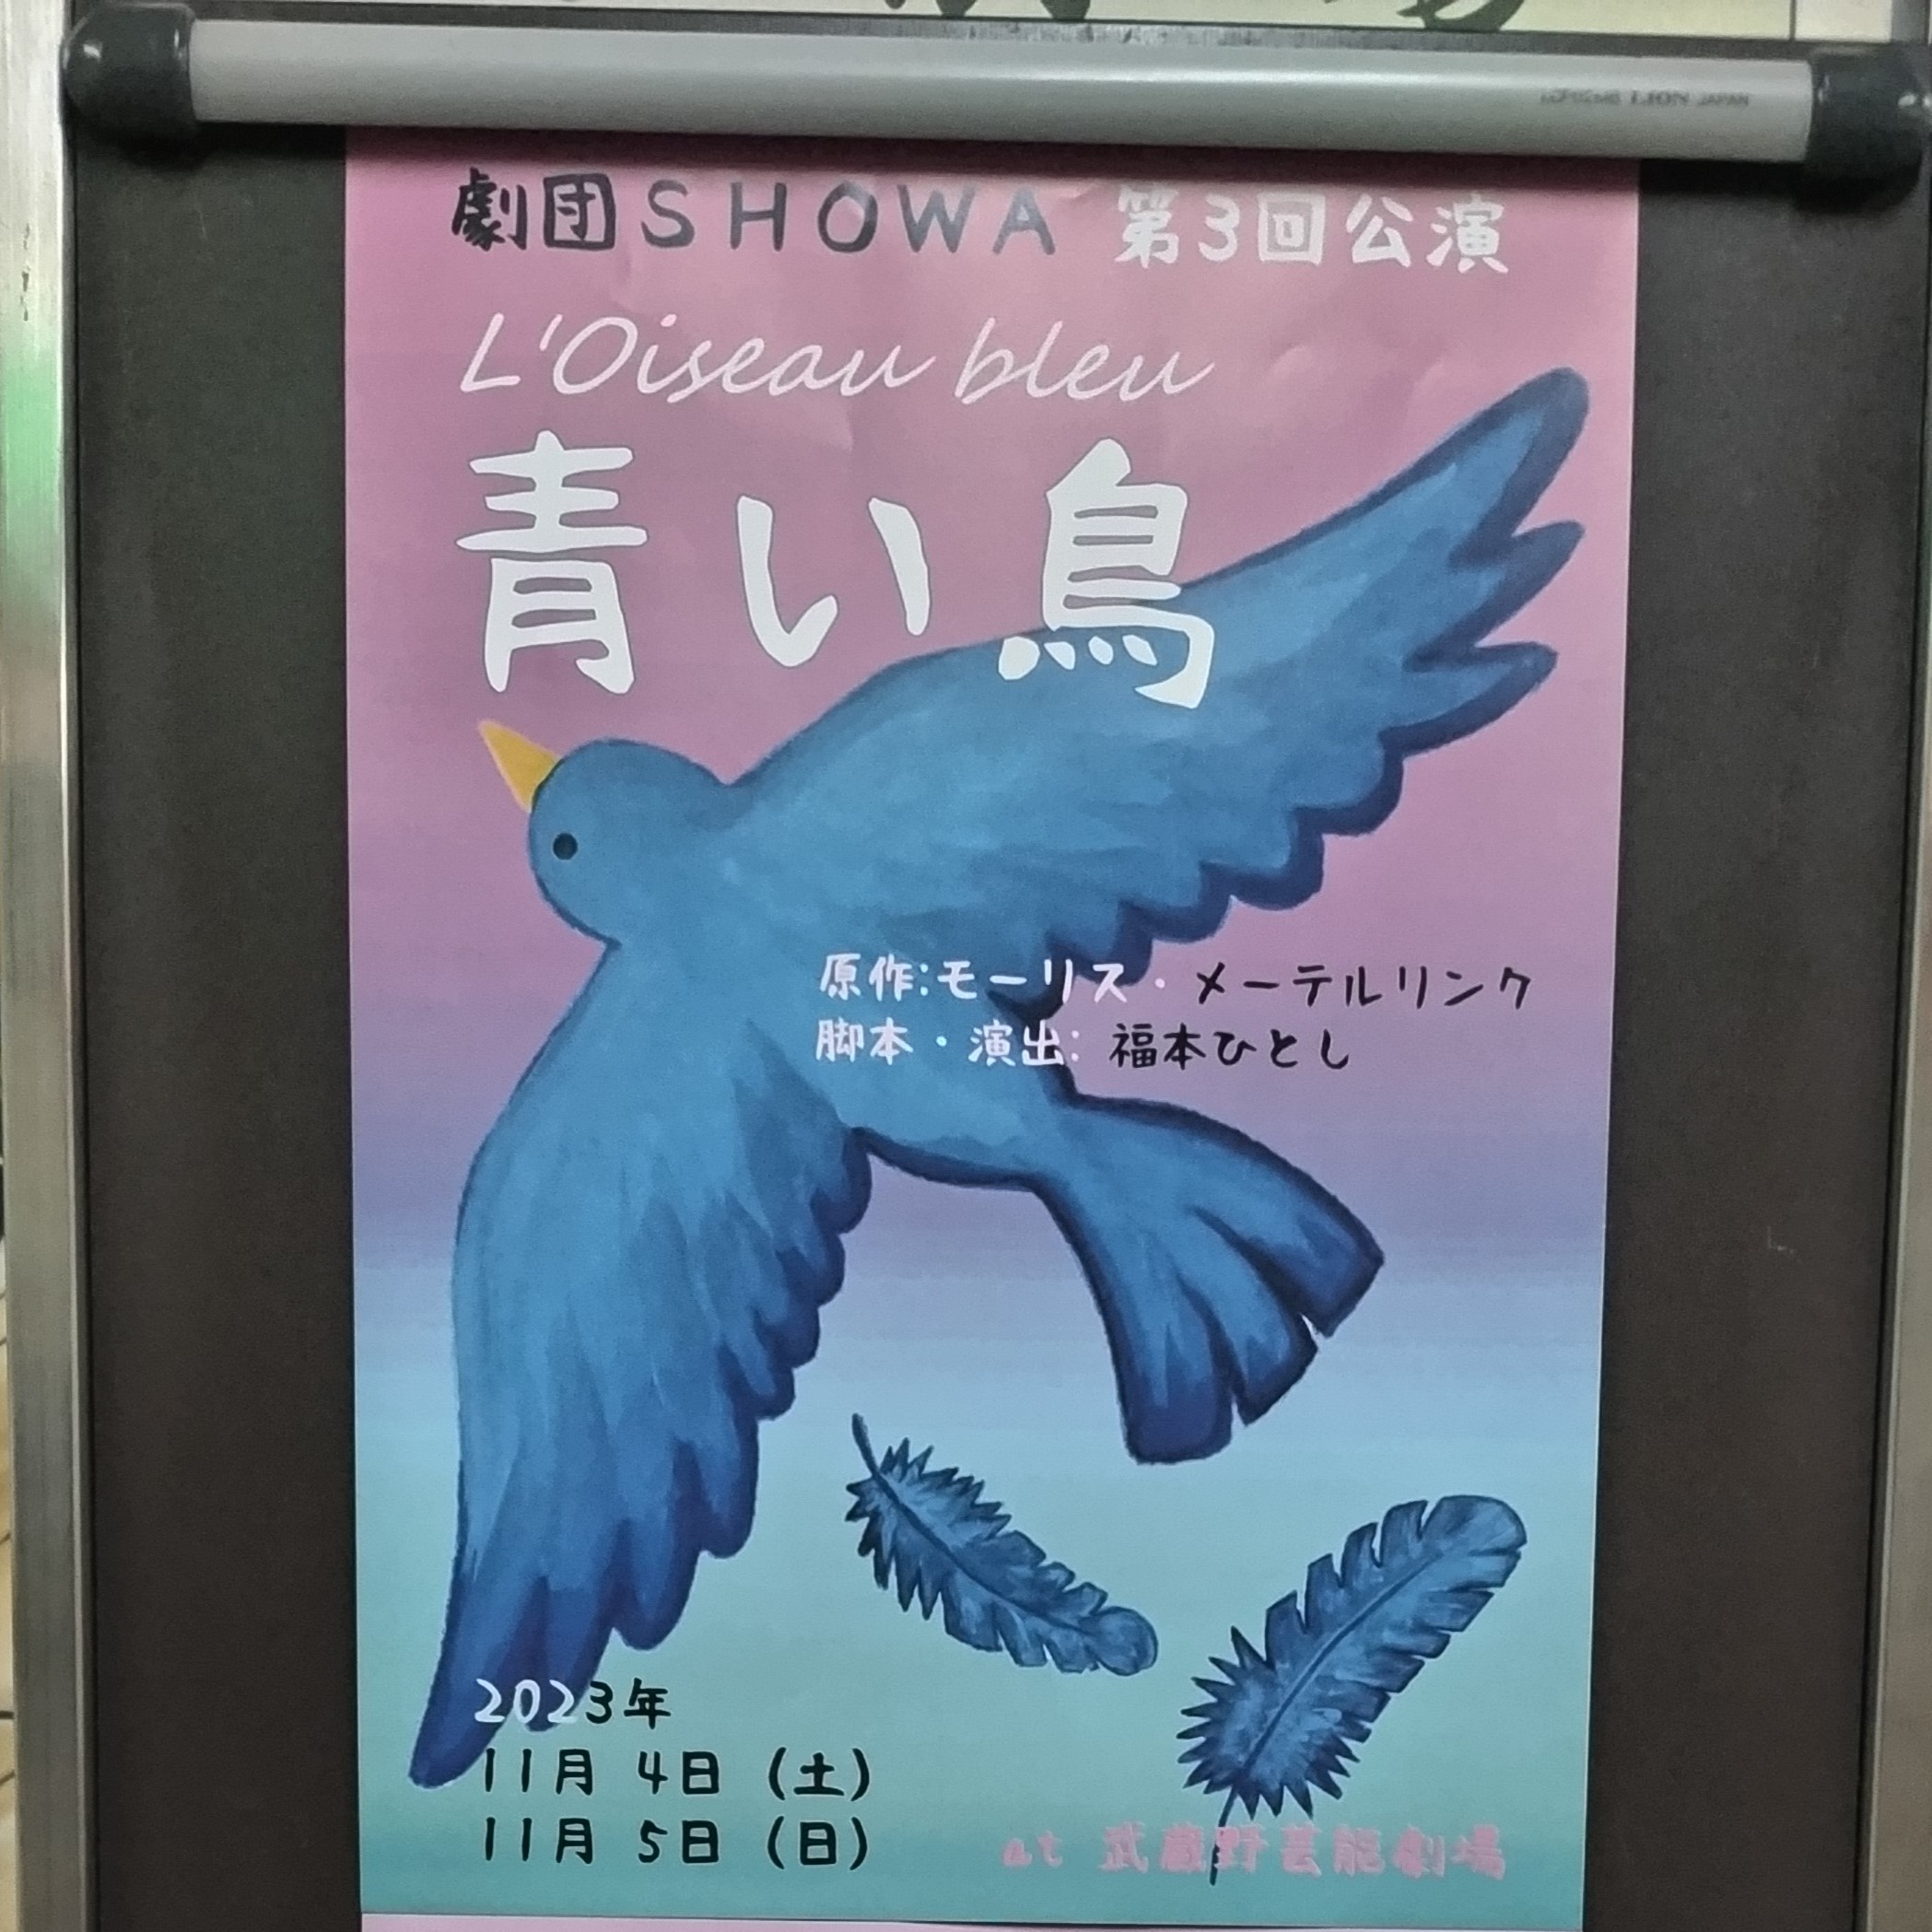 劇団SHOWA 第3回公演『青い鳥』を観劇してきました　in 武蔵野芸能劇場